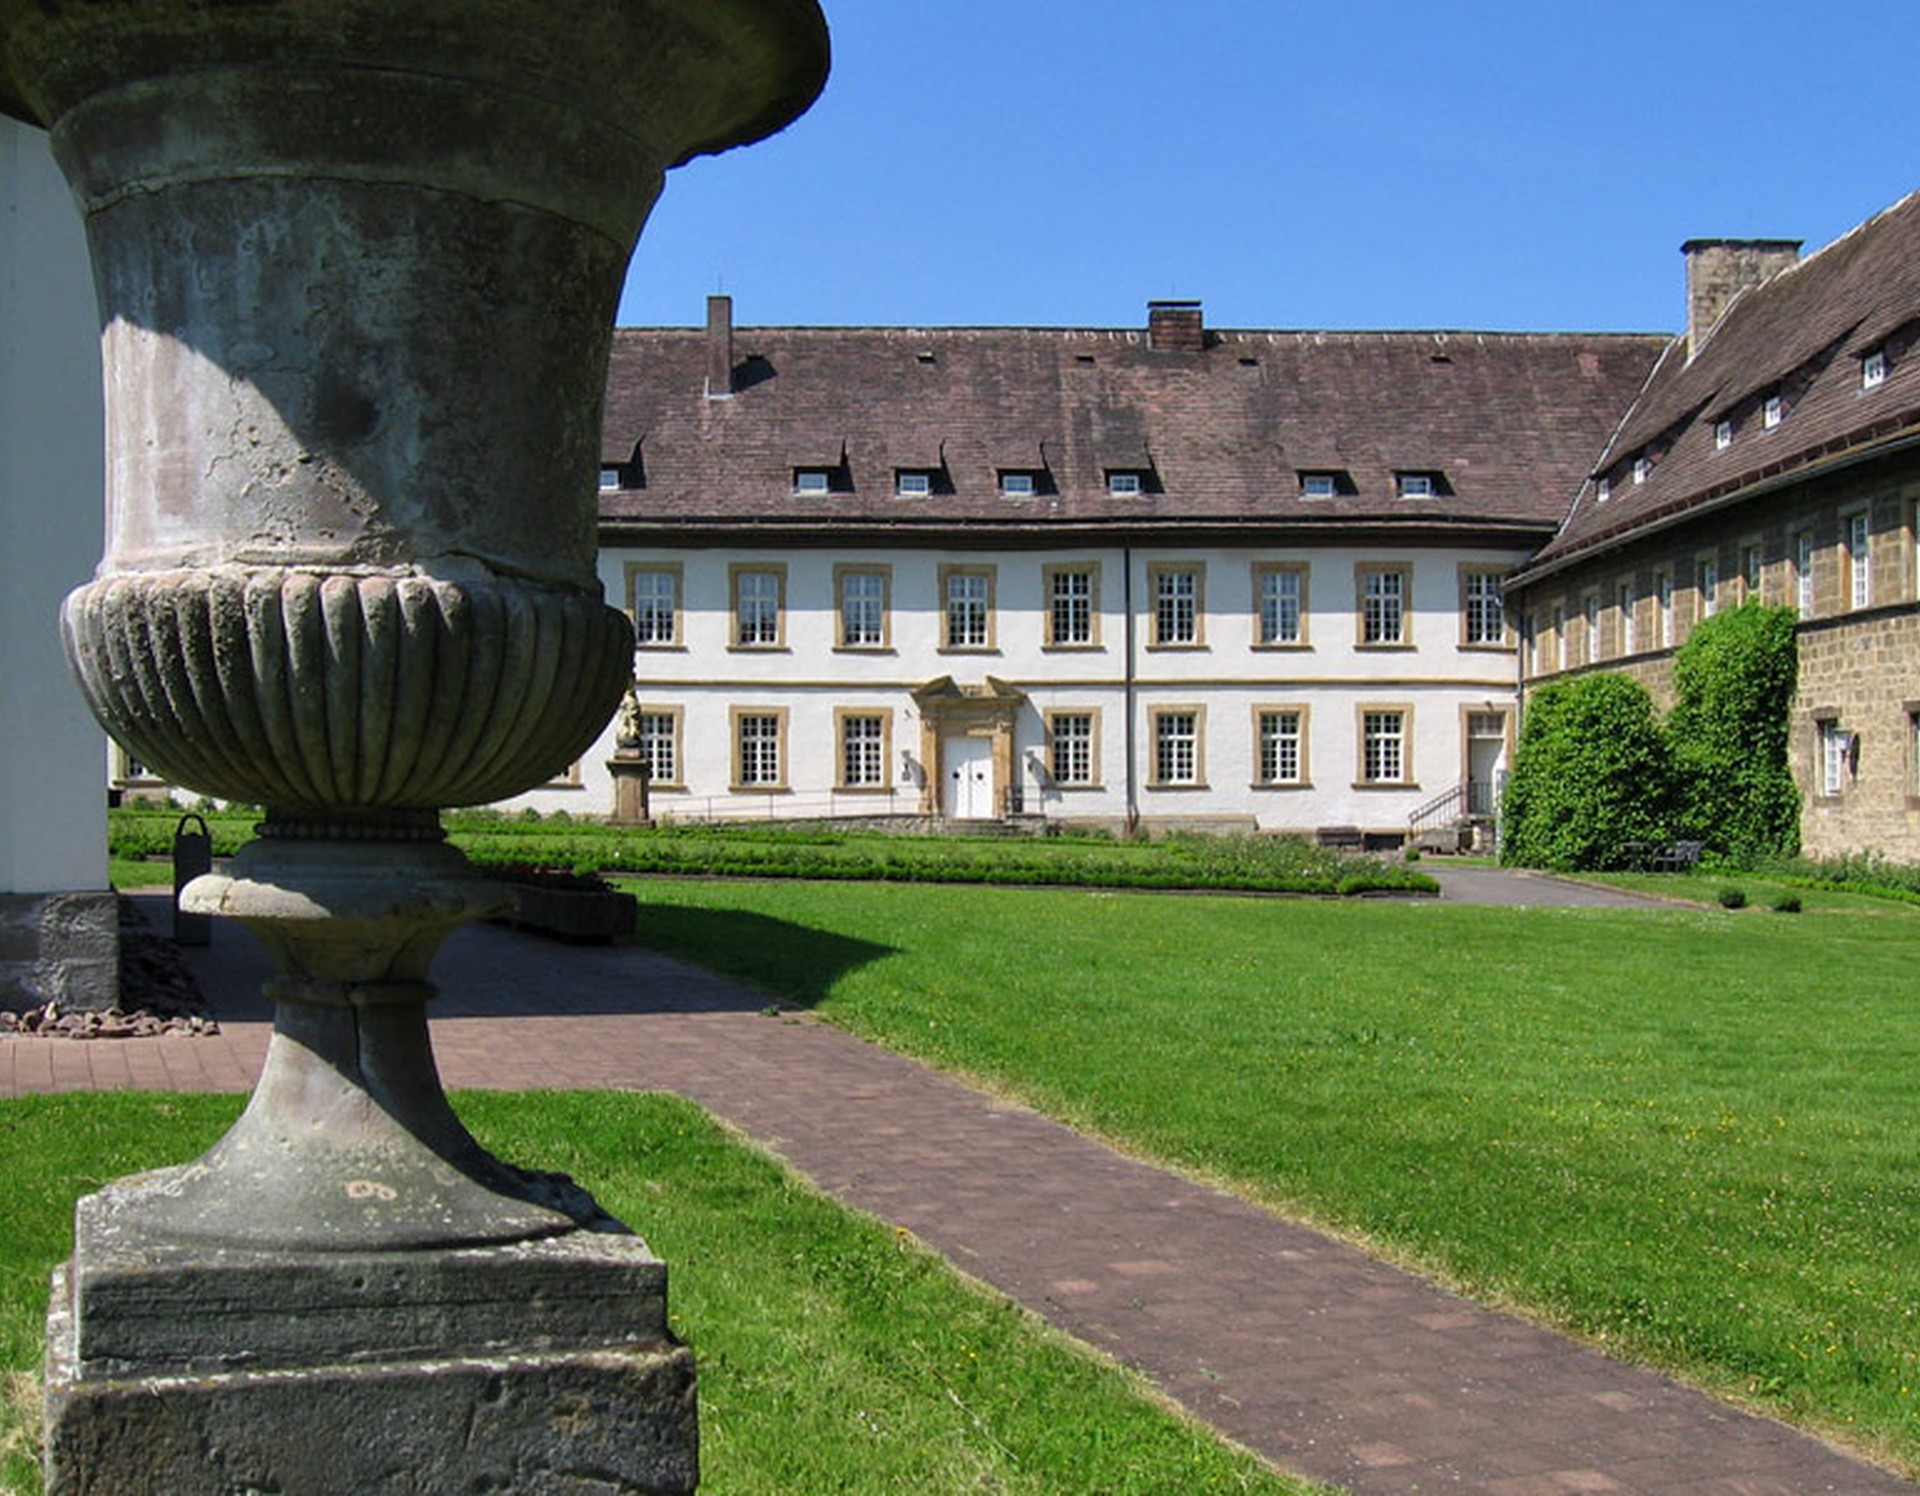 Der Innenhof des Schlosses Gehrden.